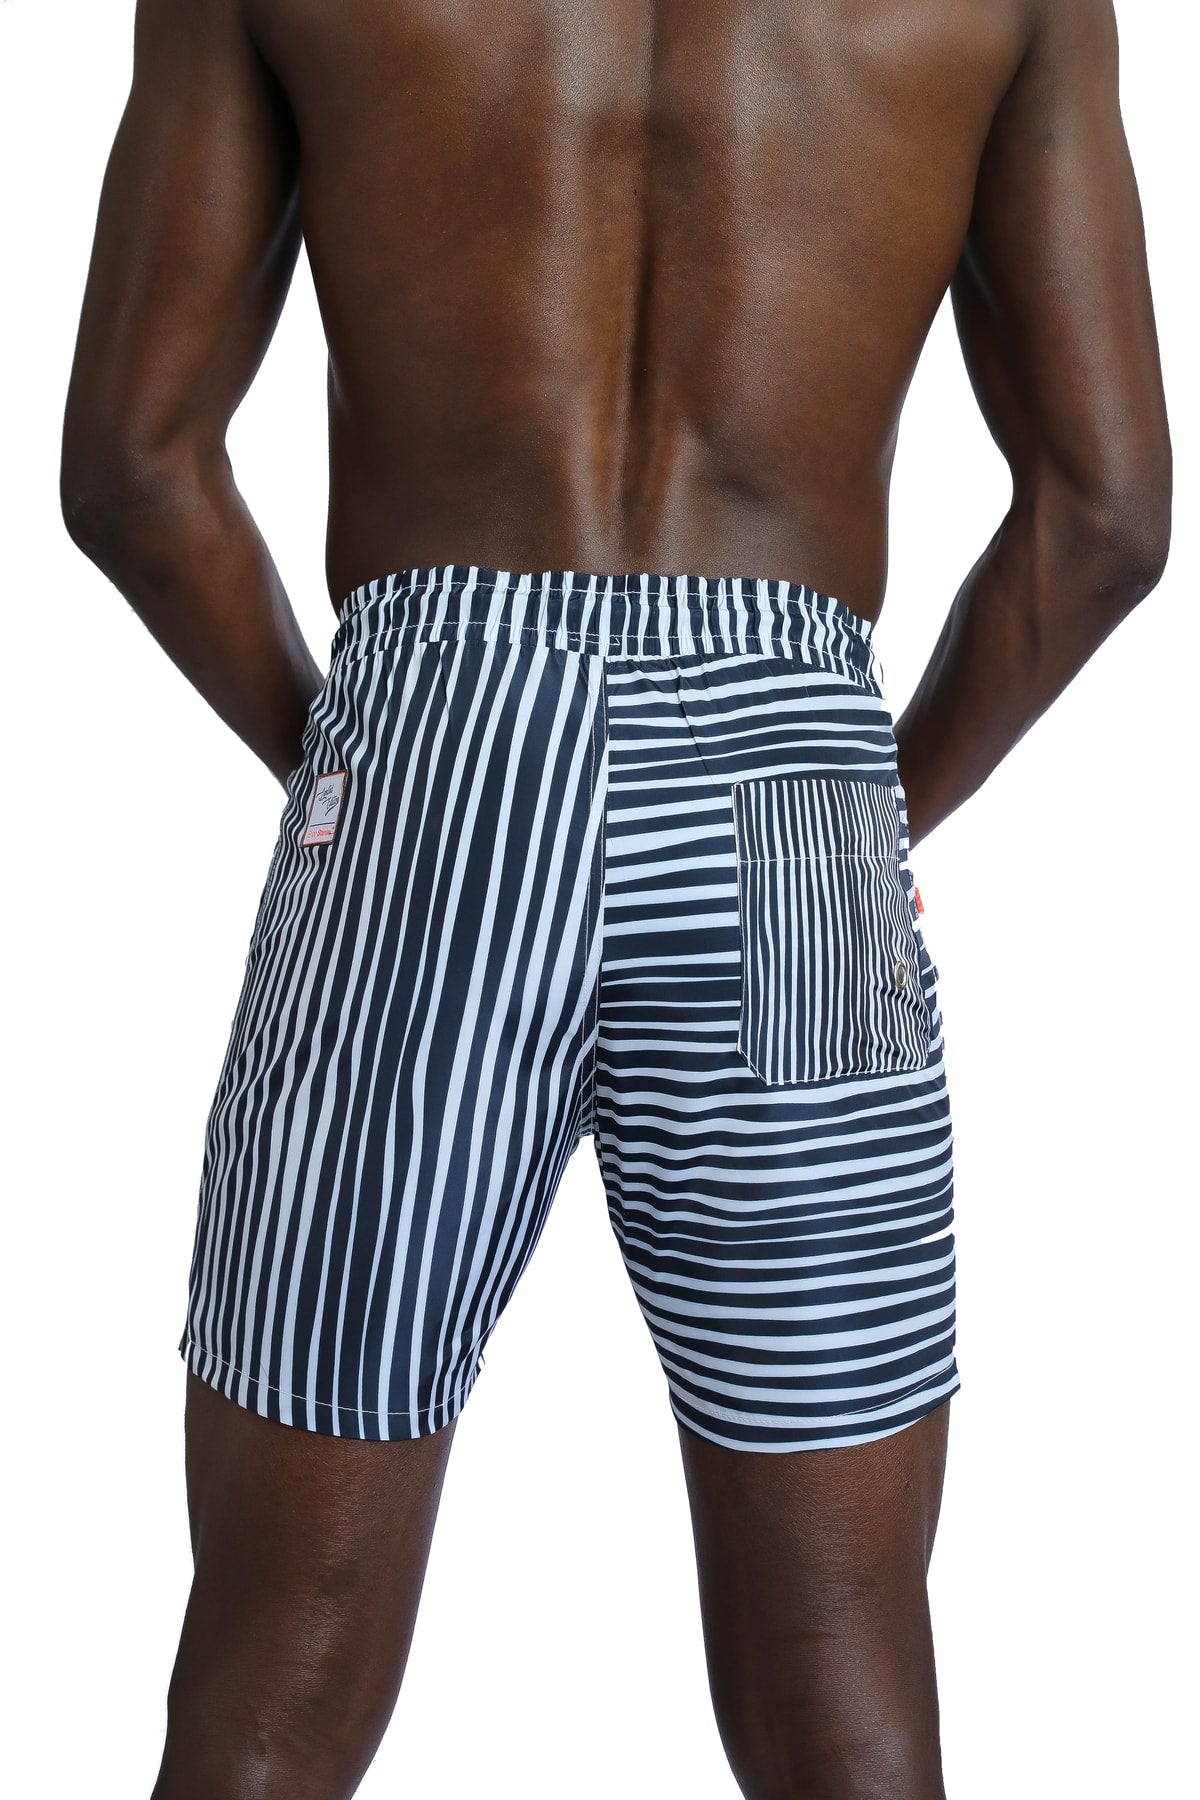 Men's Striped White Marine Shorts